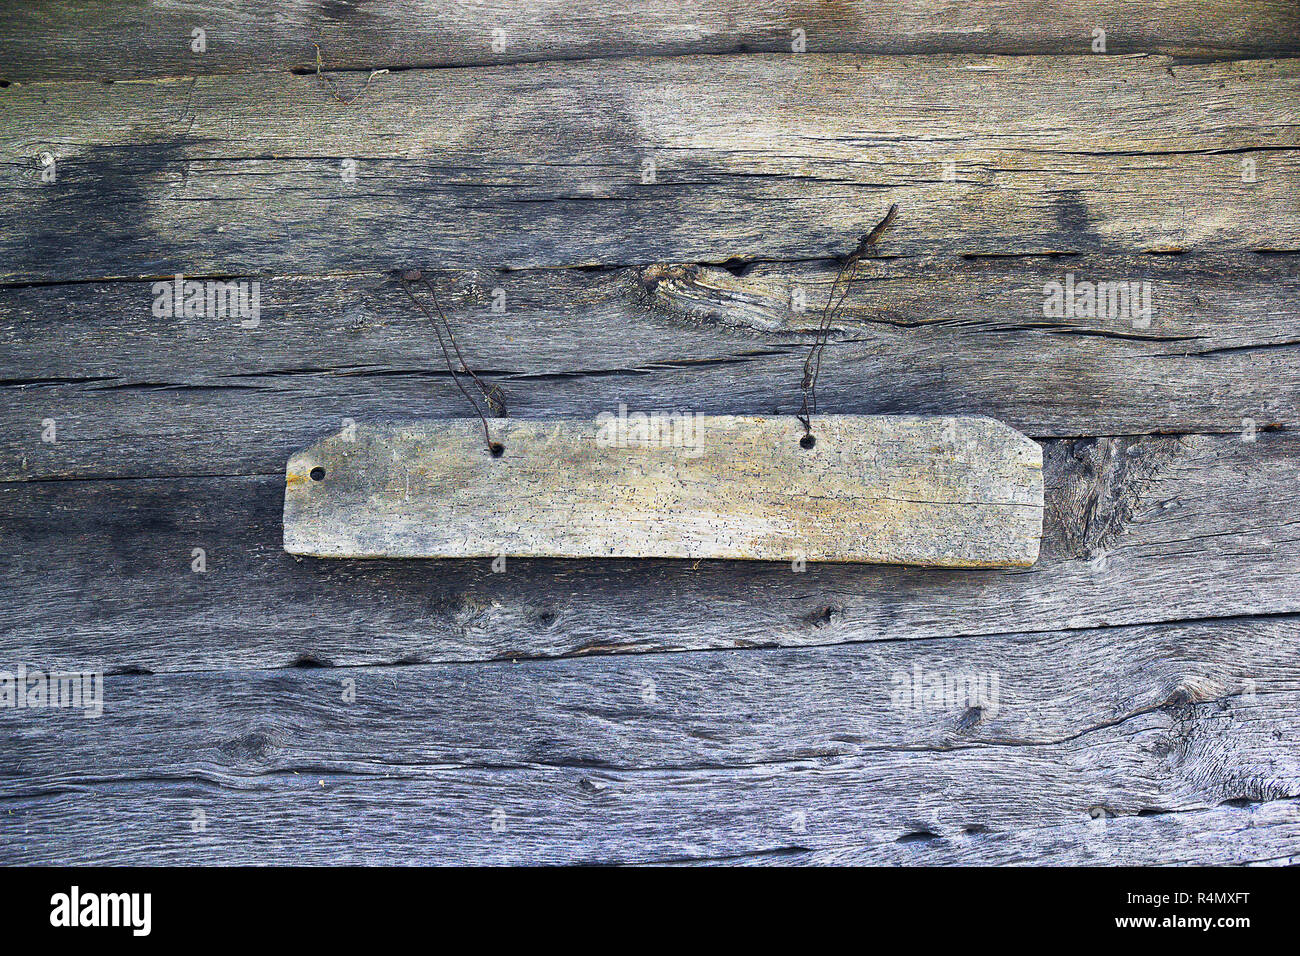 Detalle del corte tradicional de la iglesia sobre la pared; antes del servicio religioso, el sacerdote golpea este pedazo de madera con pequeños martillos de madera Foto de stock